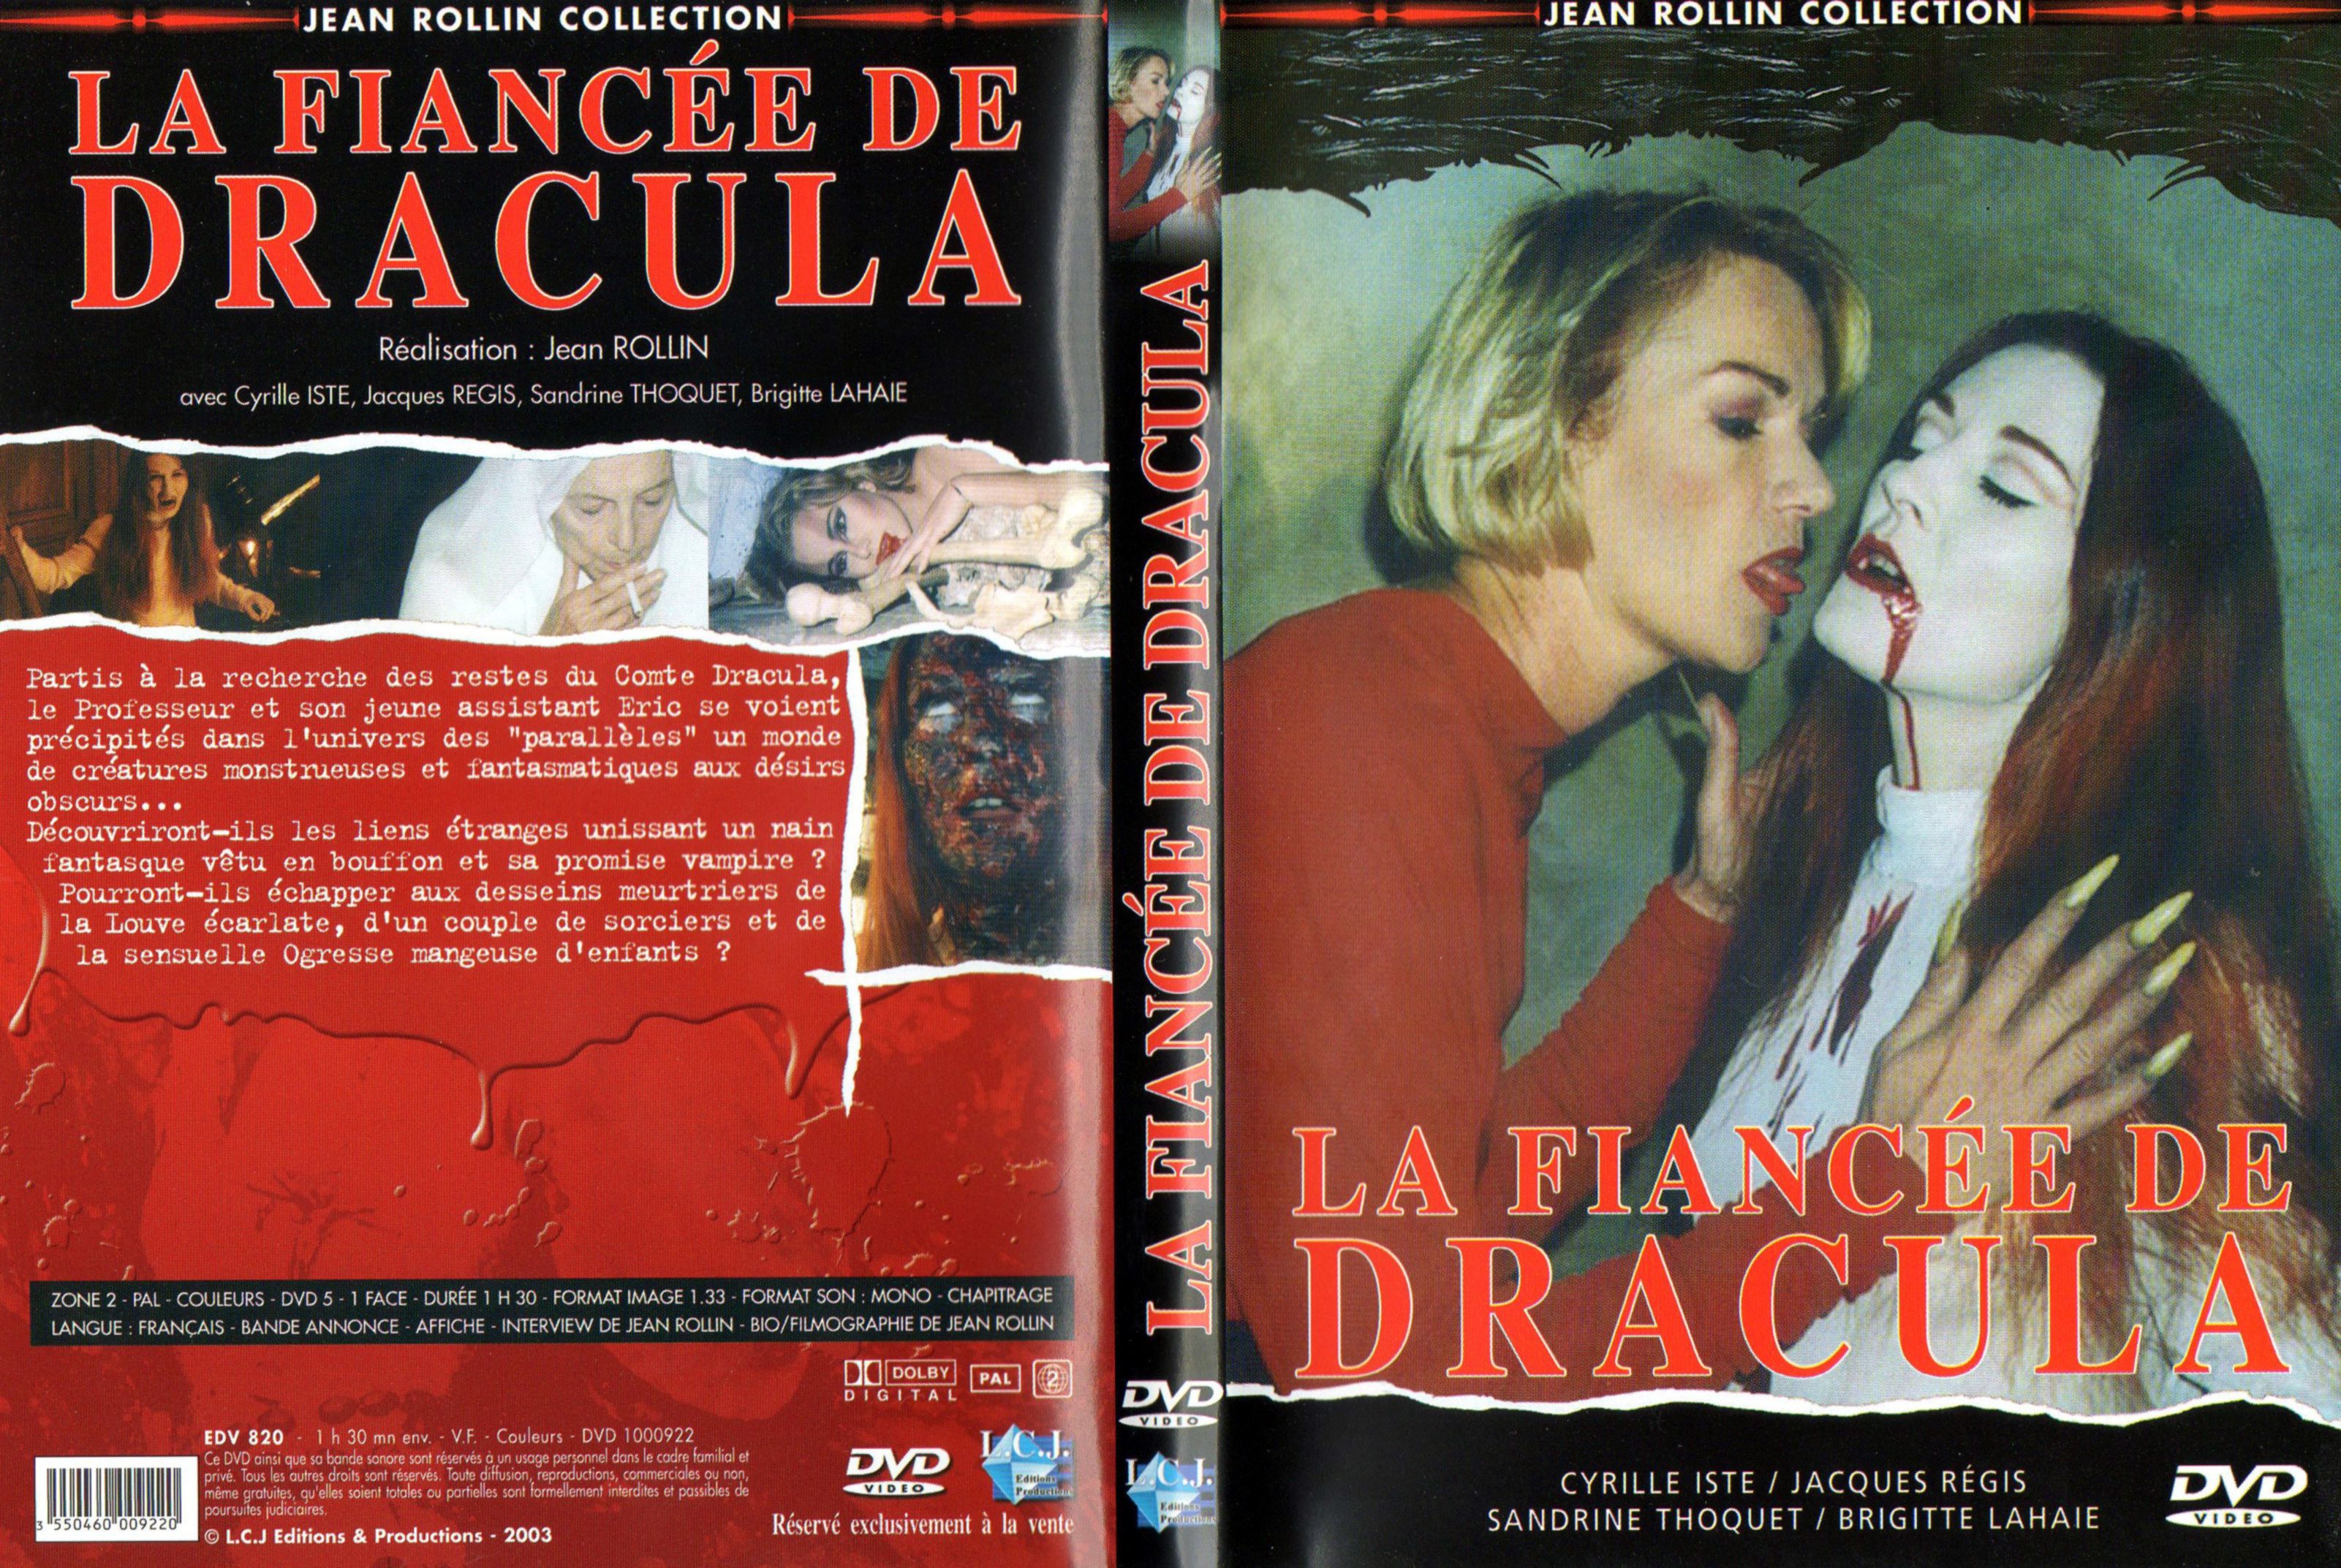 Jaquette DVD La fiance De Dracula